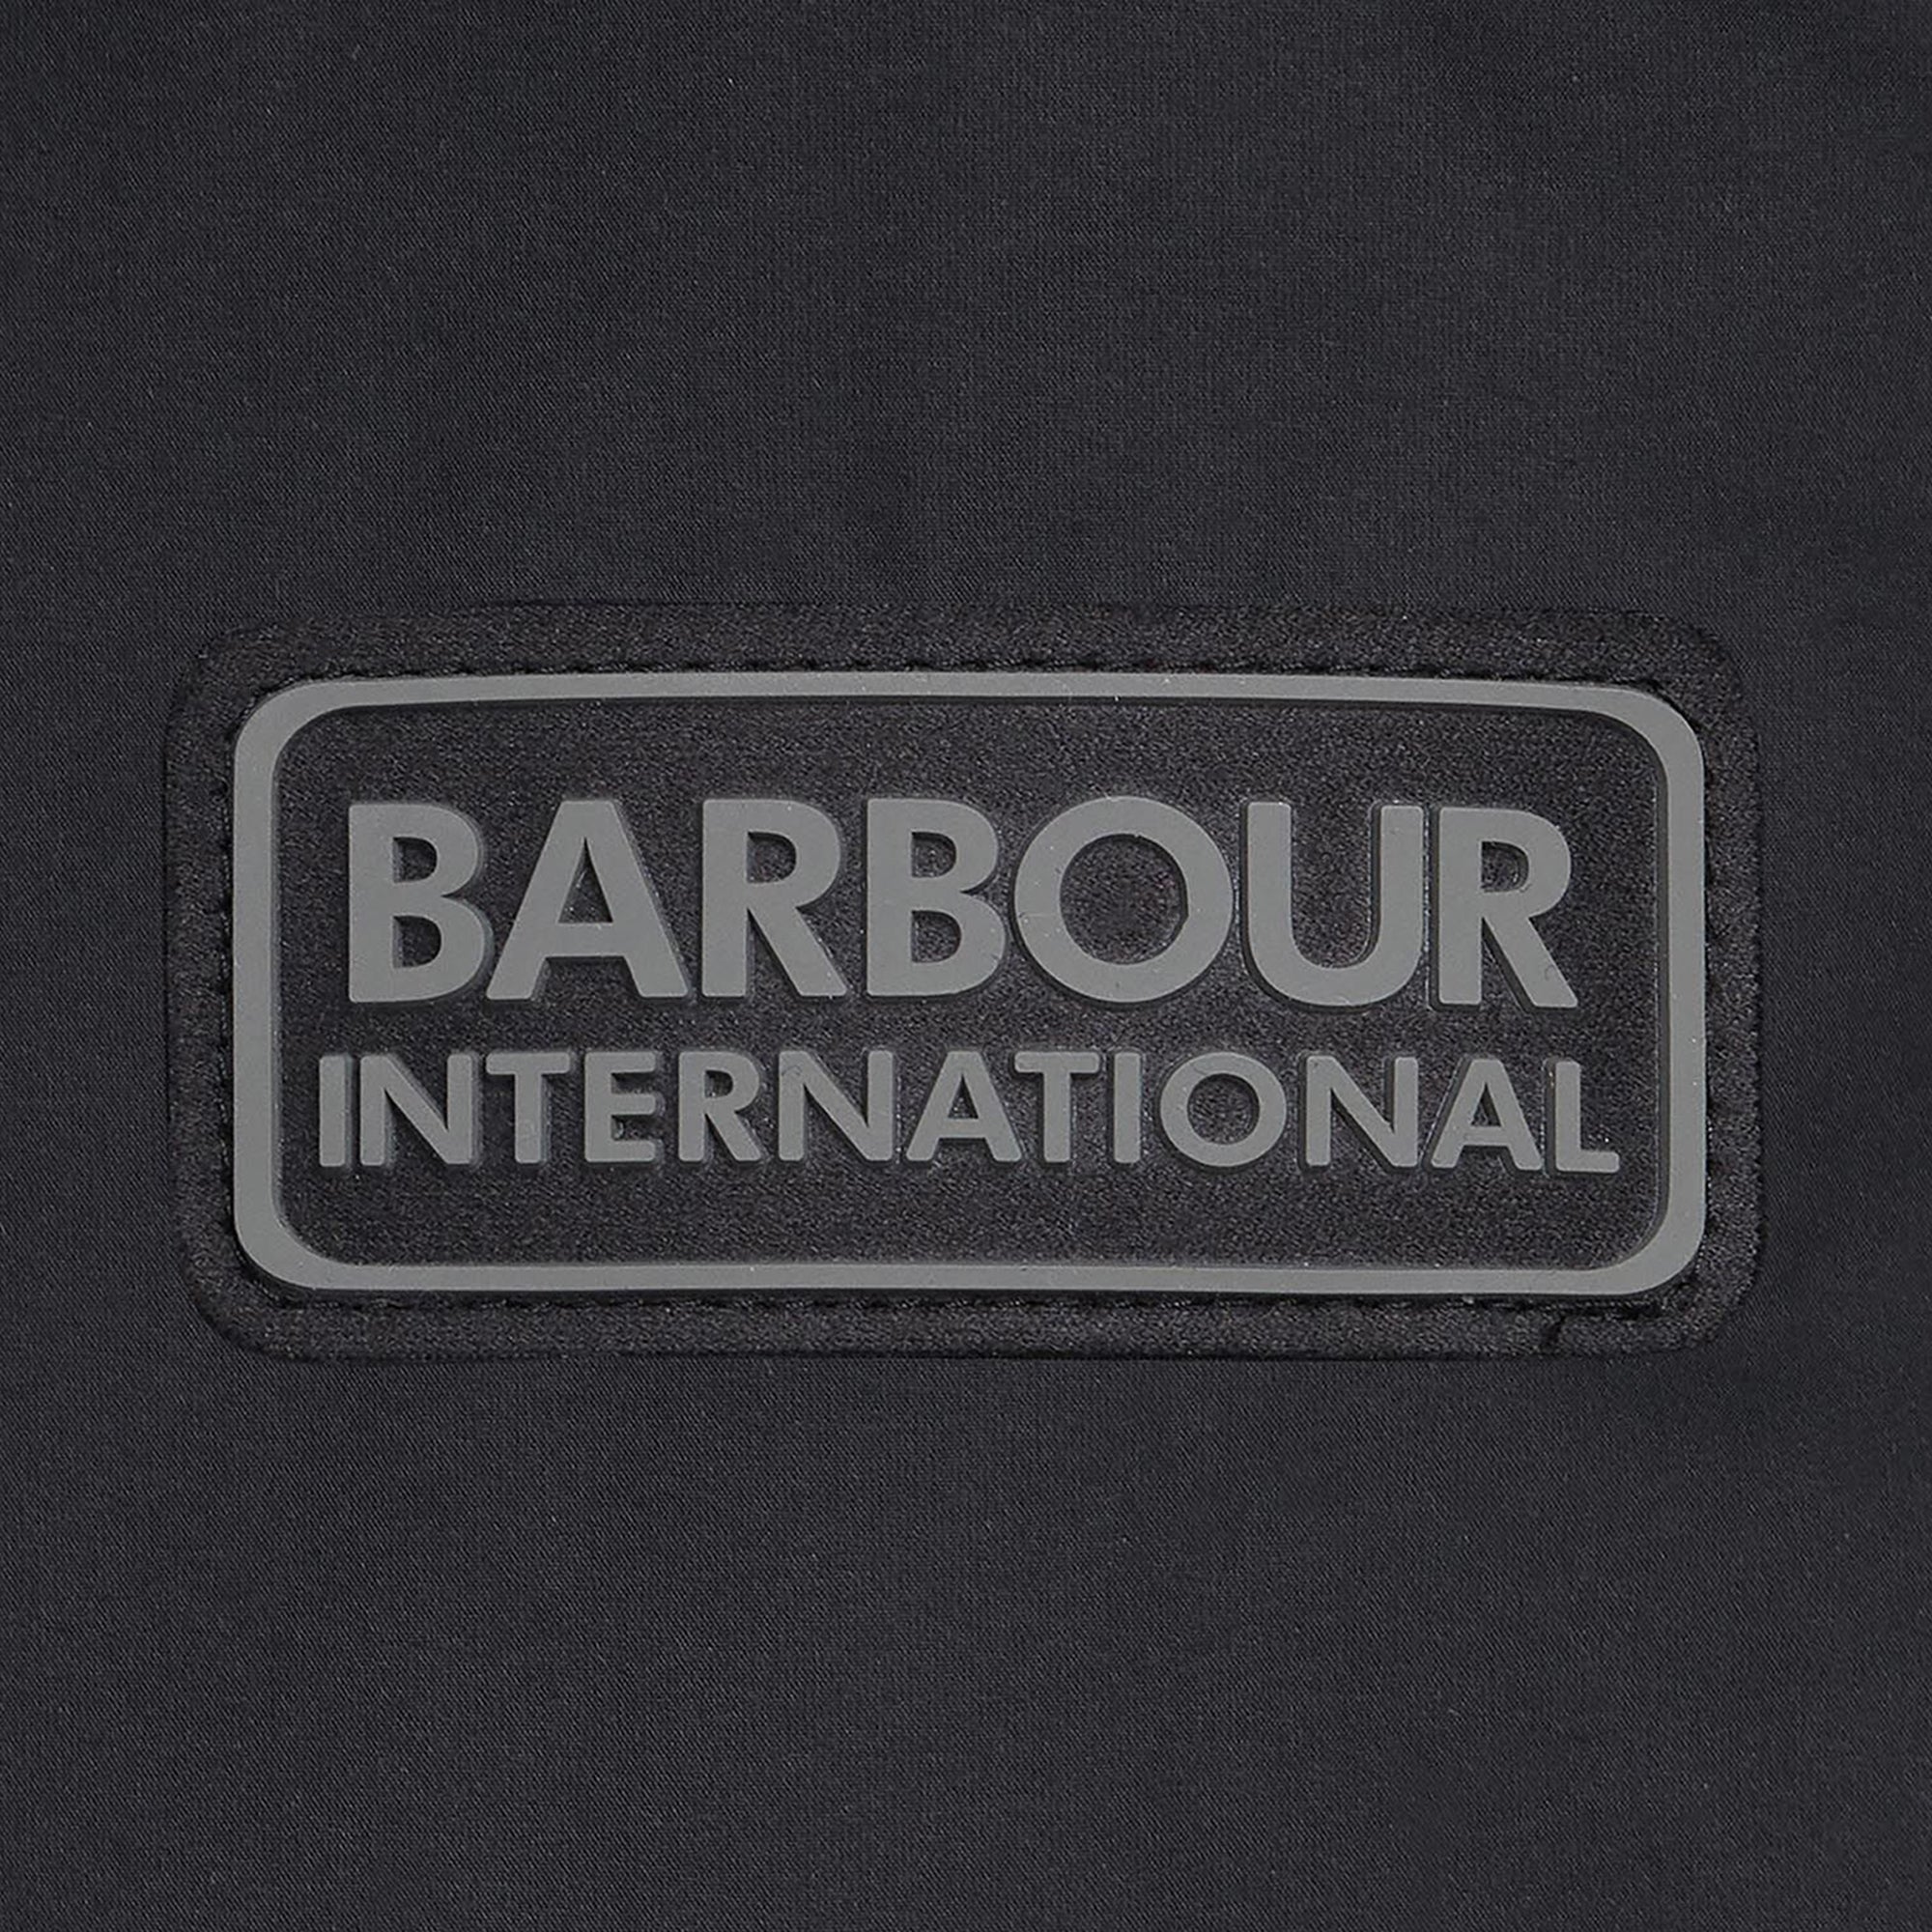 Barbour International Transmission Throttle Baffle Quilt Jacket - Black